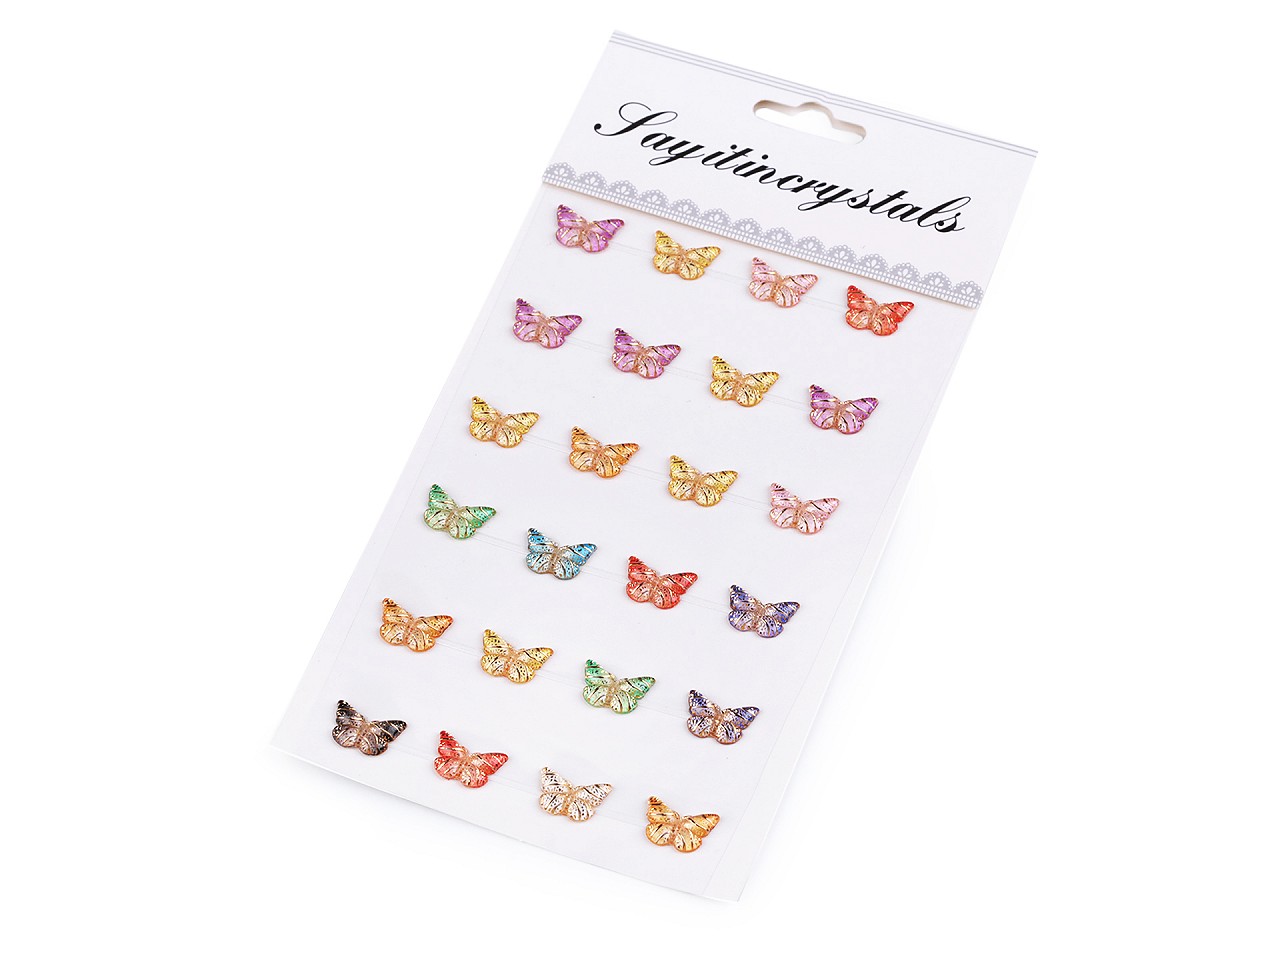 Textillux.sk - produkt Samolepiace motýliky na lepiacom prúžku - mix náhodný